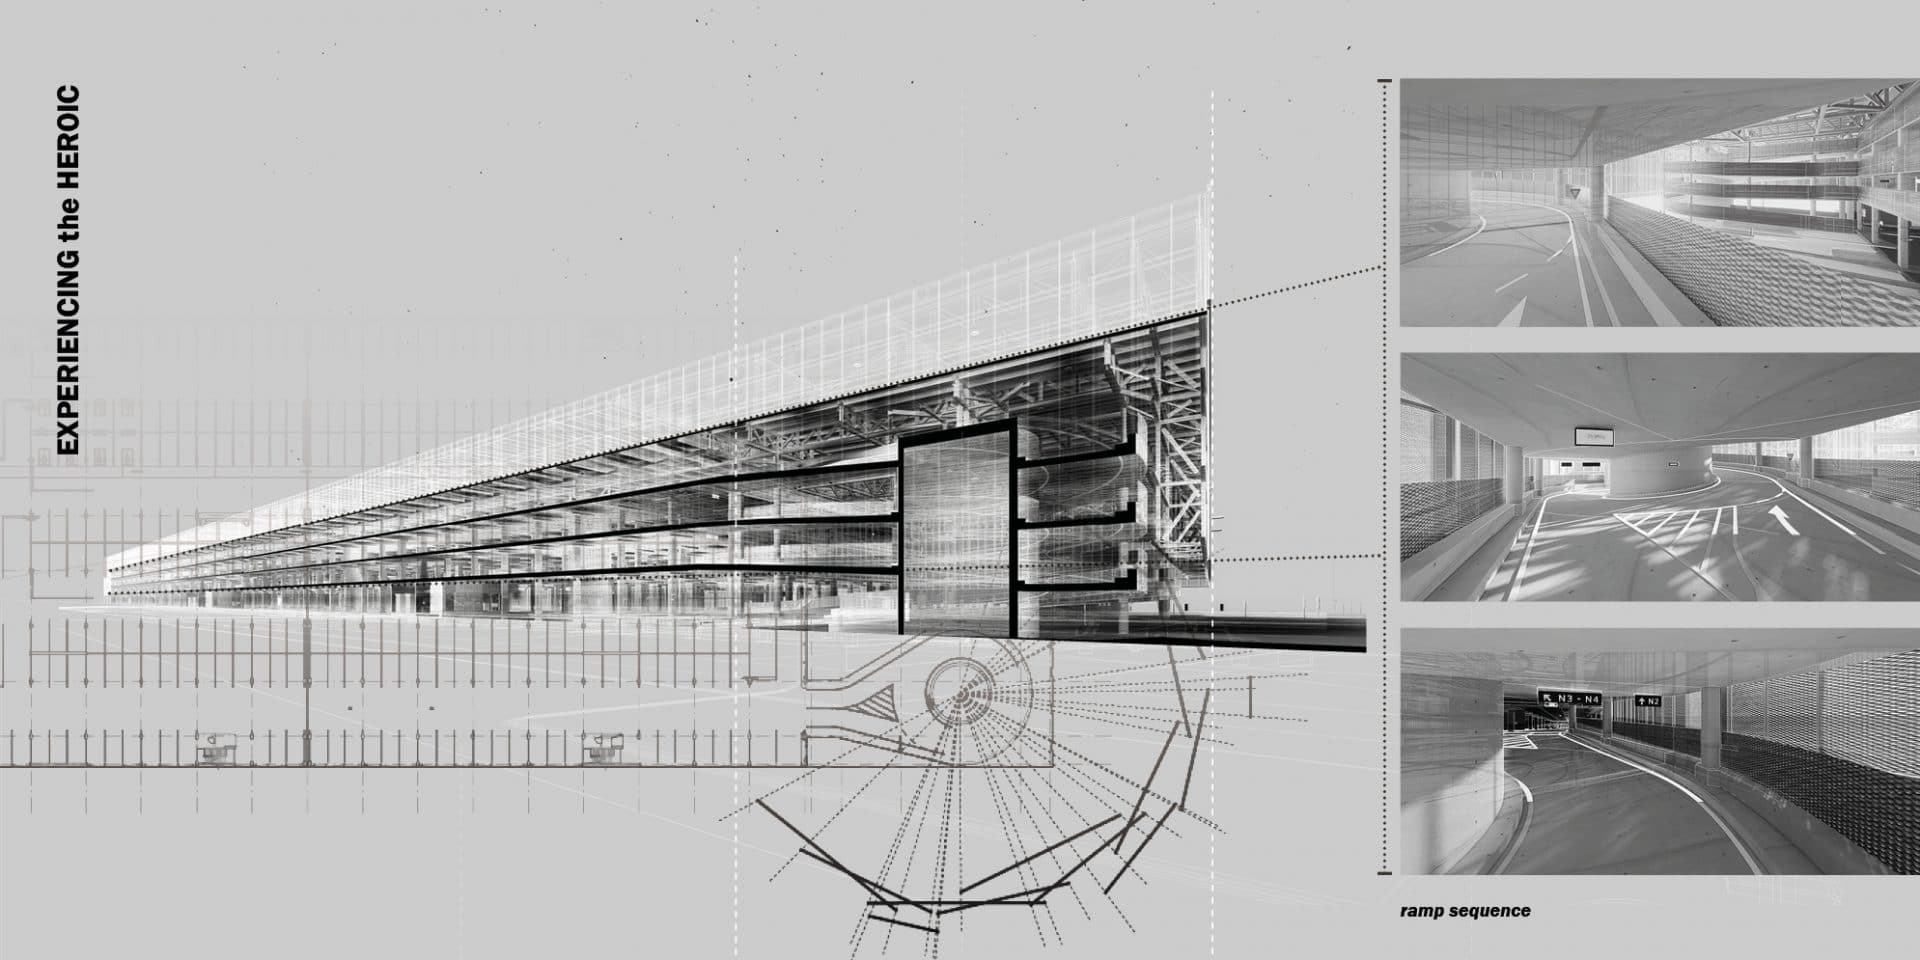 Montreal_YUL_Parking_Architecture_Urban_Plan_Sketching_Lemay_Design